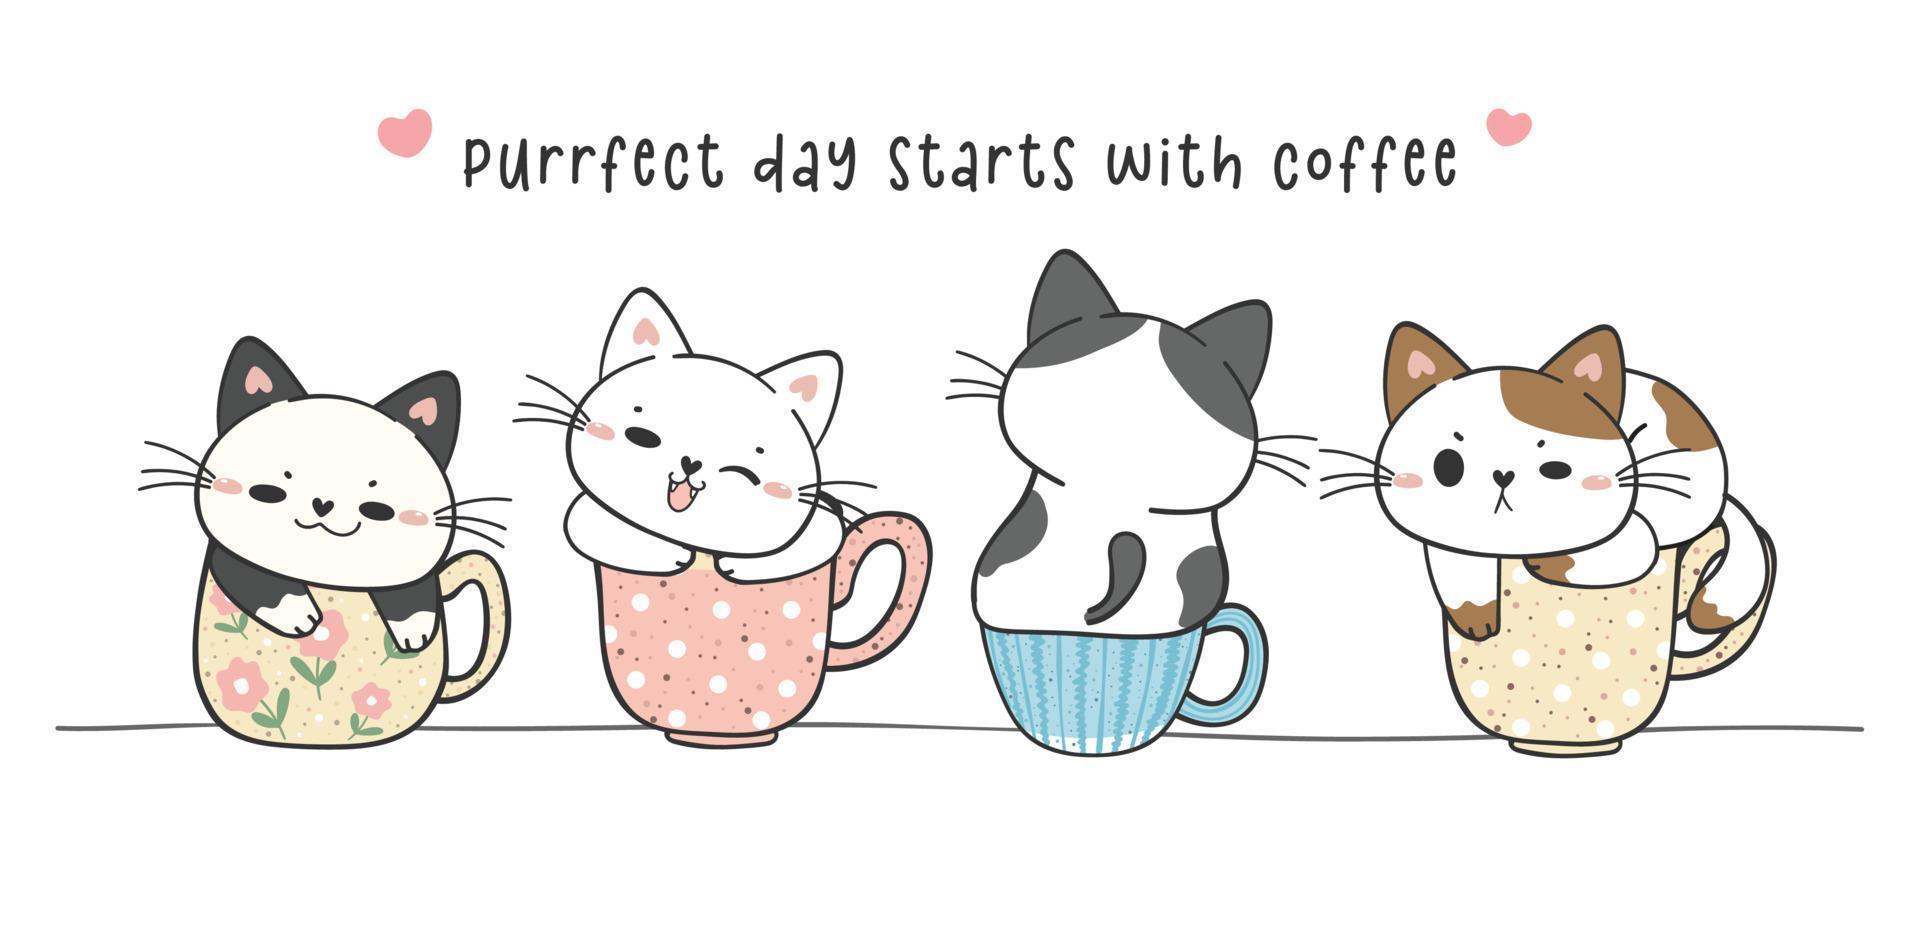 grupp av söta roliga kattungekatter som sitter på samlingen av kaffekoppsmugg, perfekt dag med kaffe, bedårande djur och sällskapsdjur handritning doodle vektor